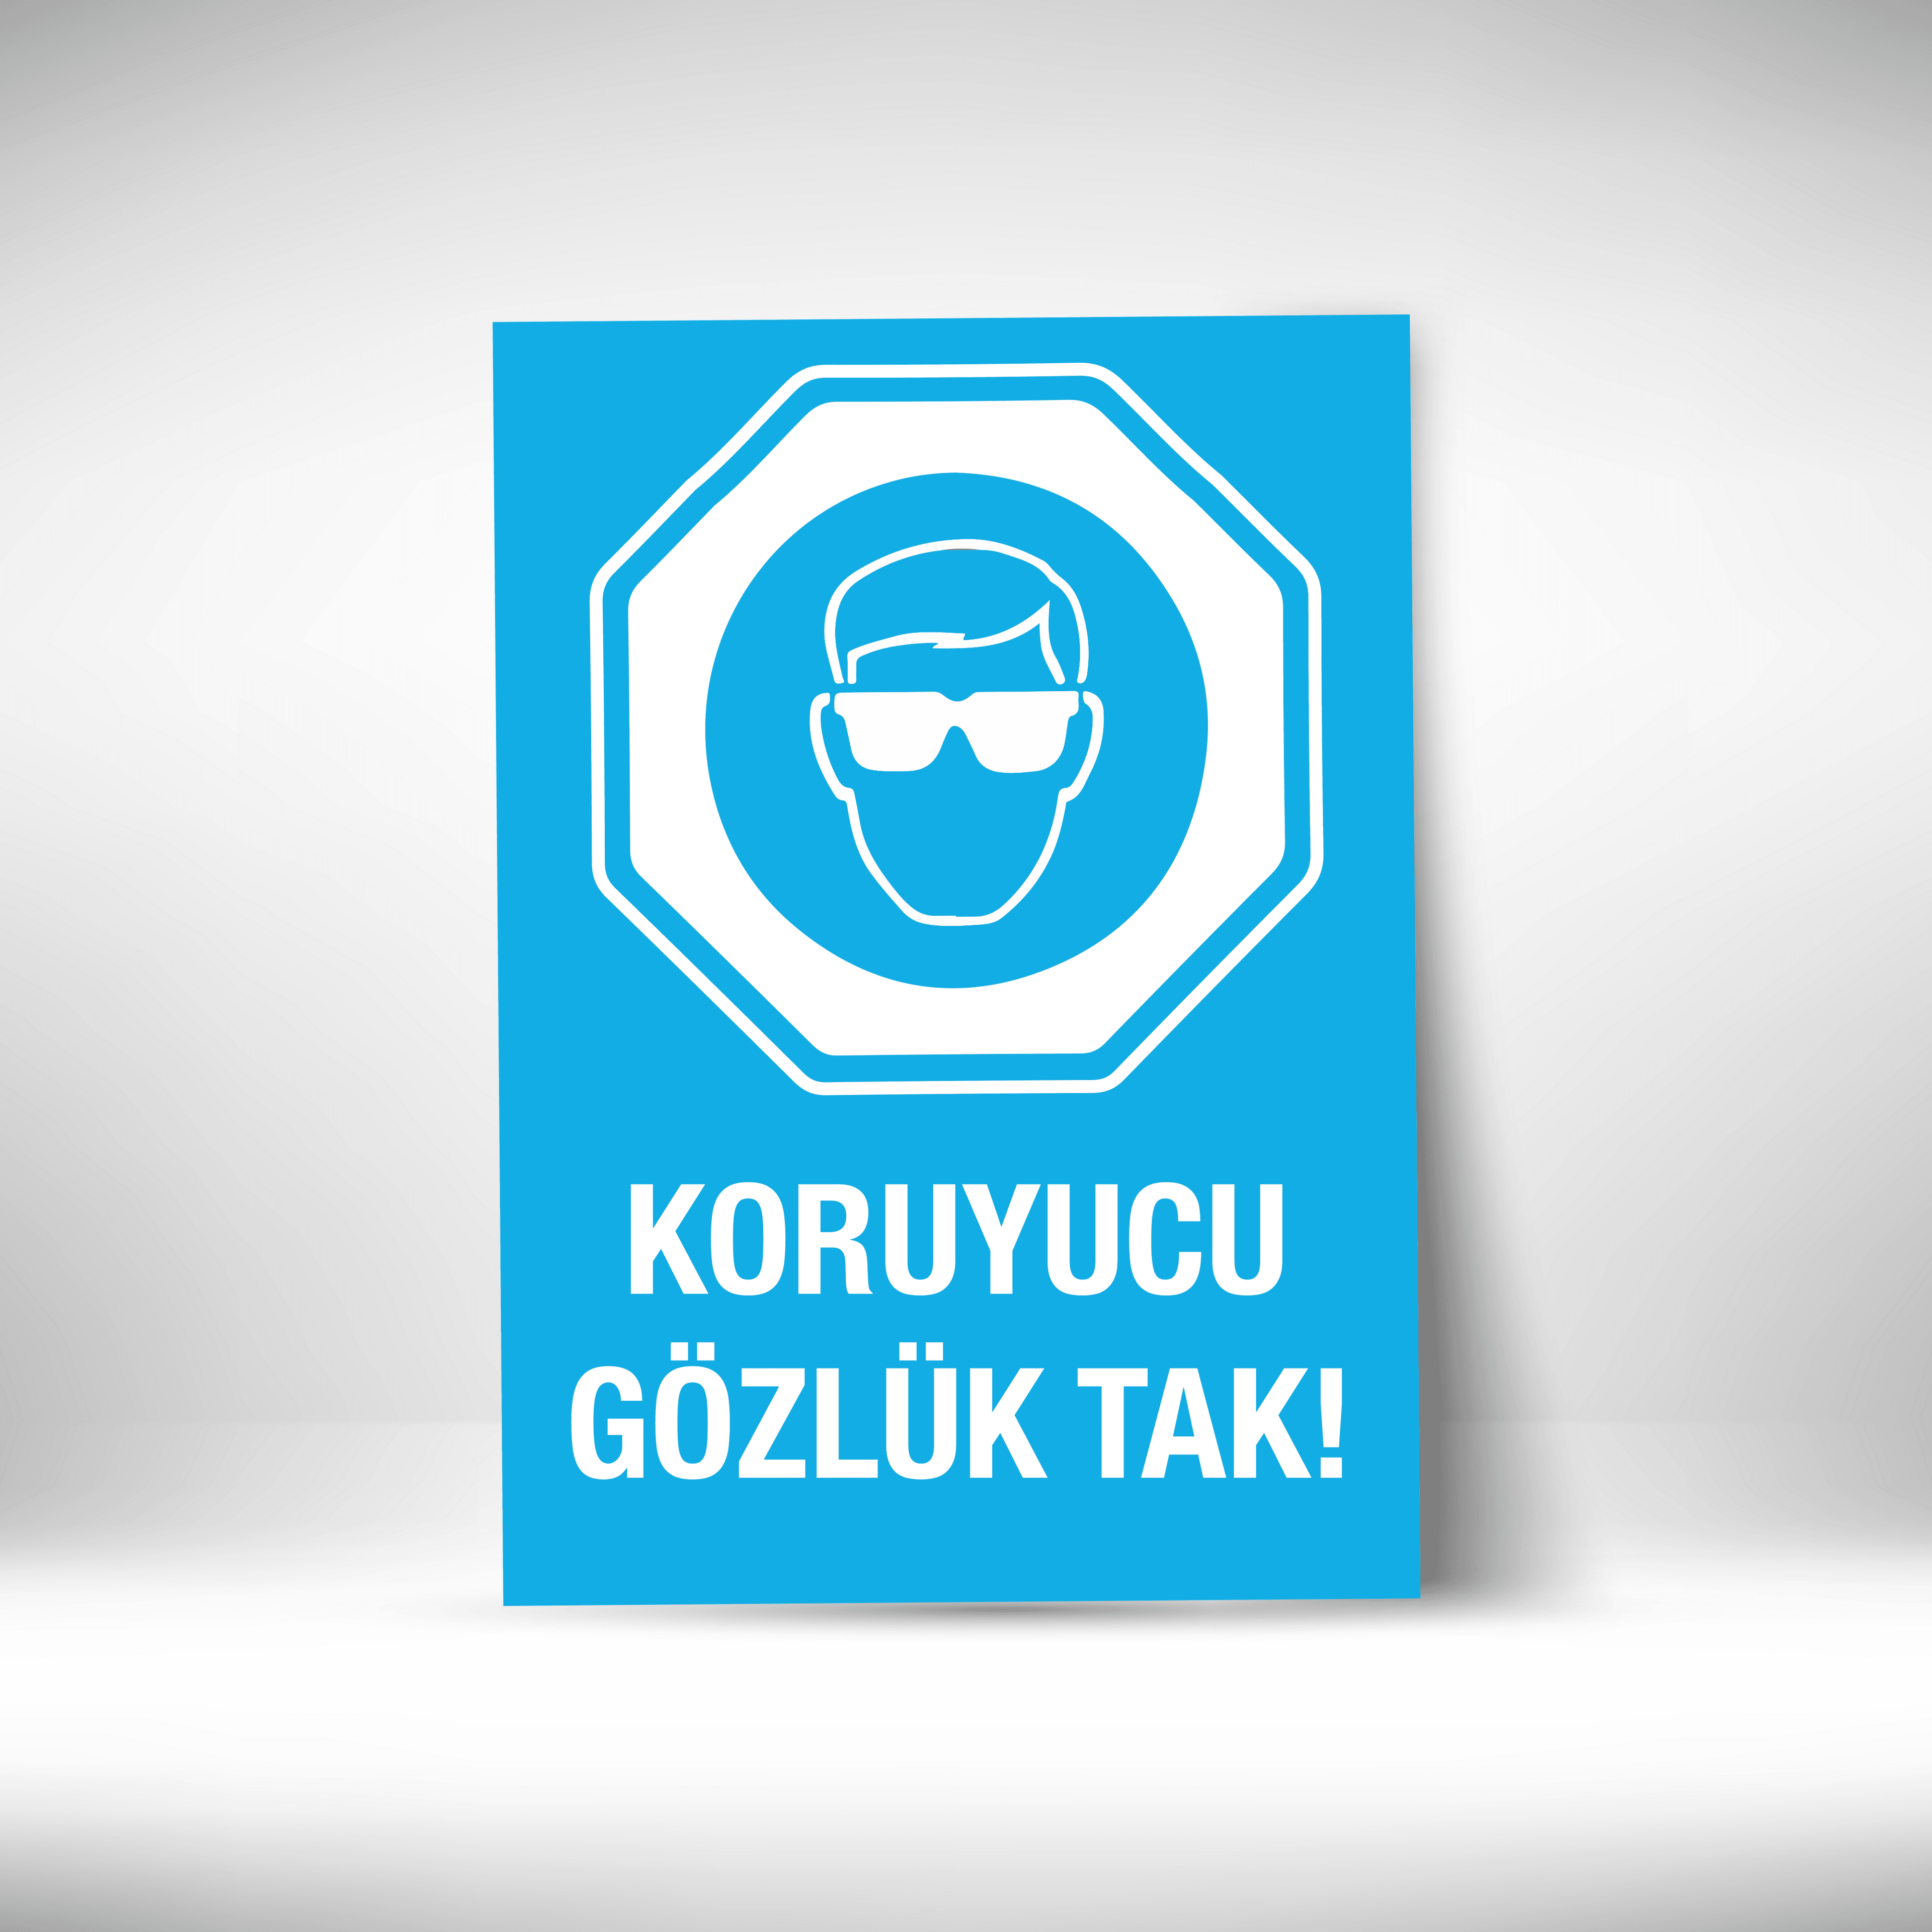 Koruyucu Gözlük Tak main variant image